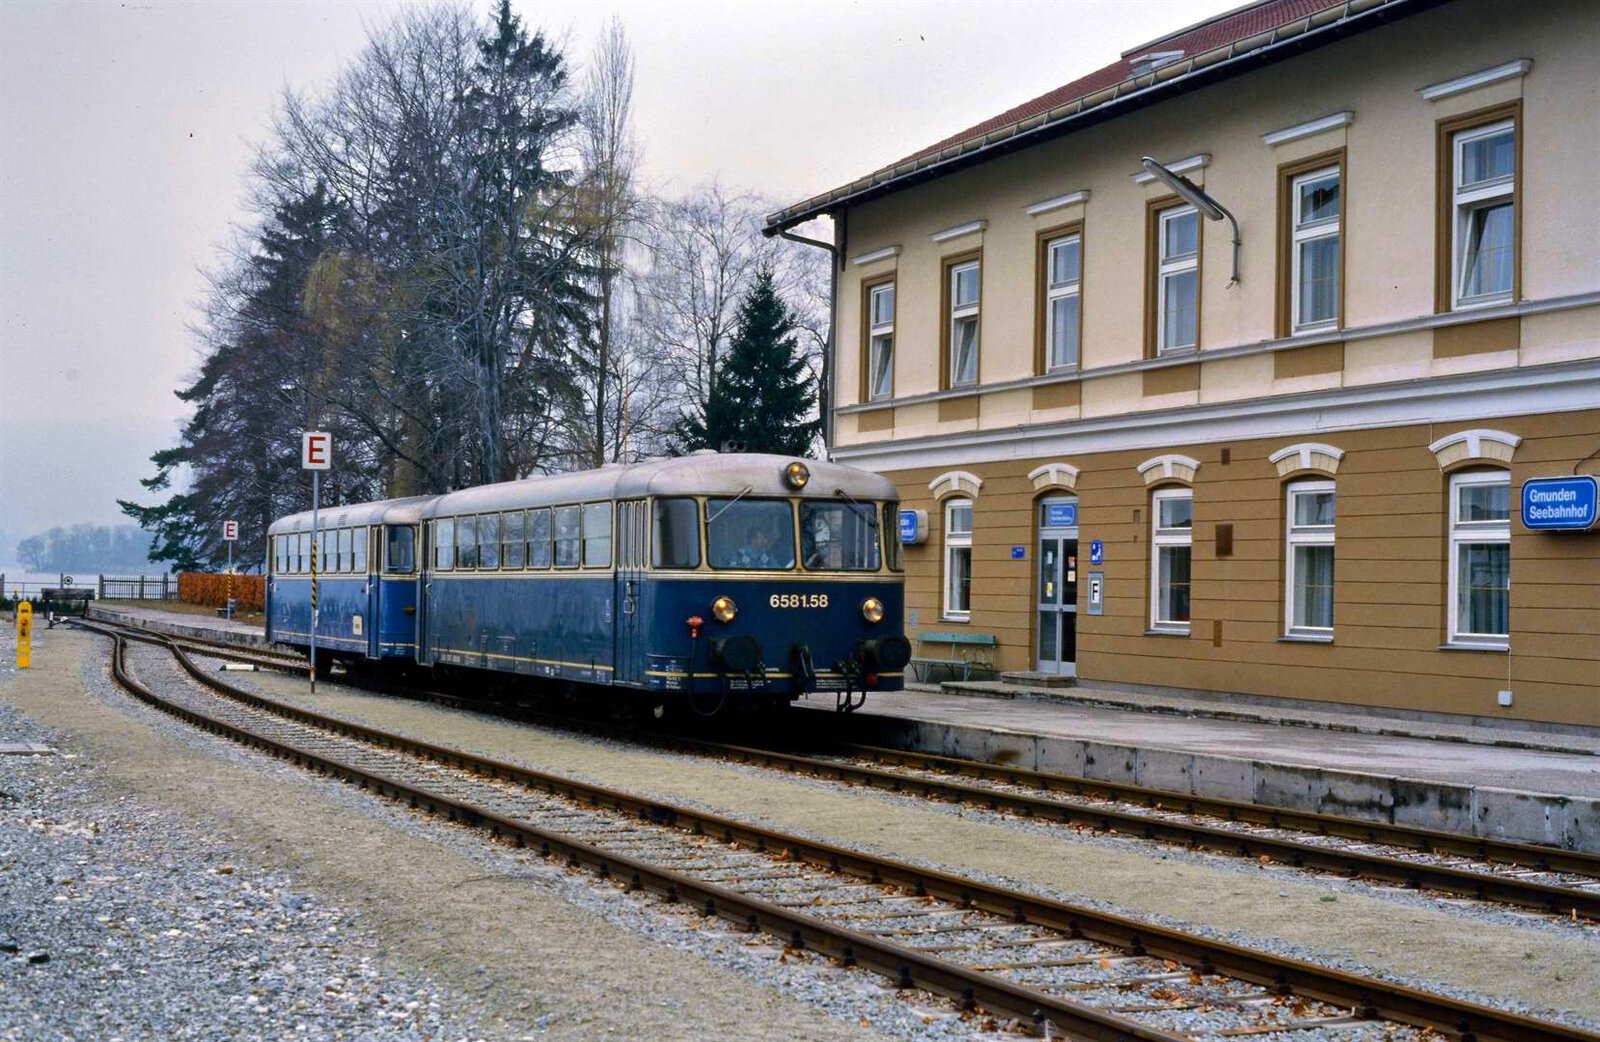 Erinnerung an den besonders schön gelegenen Seebahnhof Gmunden: Ein Uerdinger Schienenbuszug der Lokalbahn Lambach-Gmunden, zusammengestellt aus Wagen 6581.58 und Wagen 5081.52,  wartete dort am 06.04.1986 auf seine Weiterfahrt nach Lambach. 